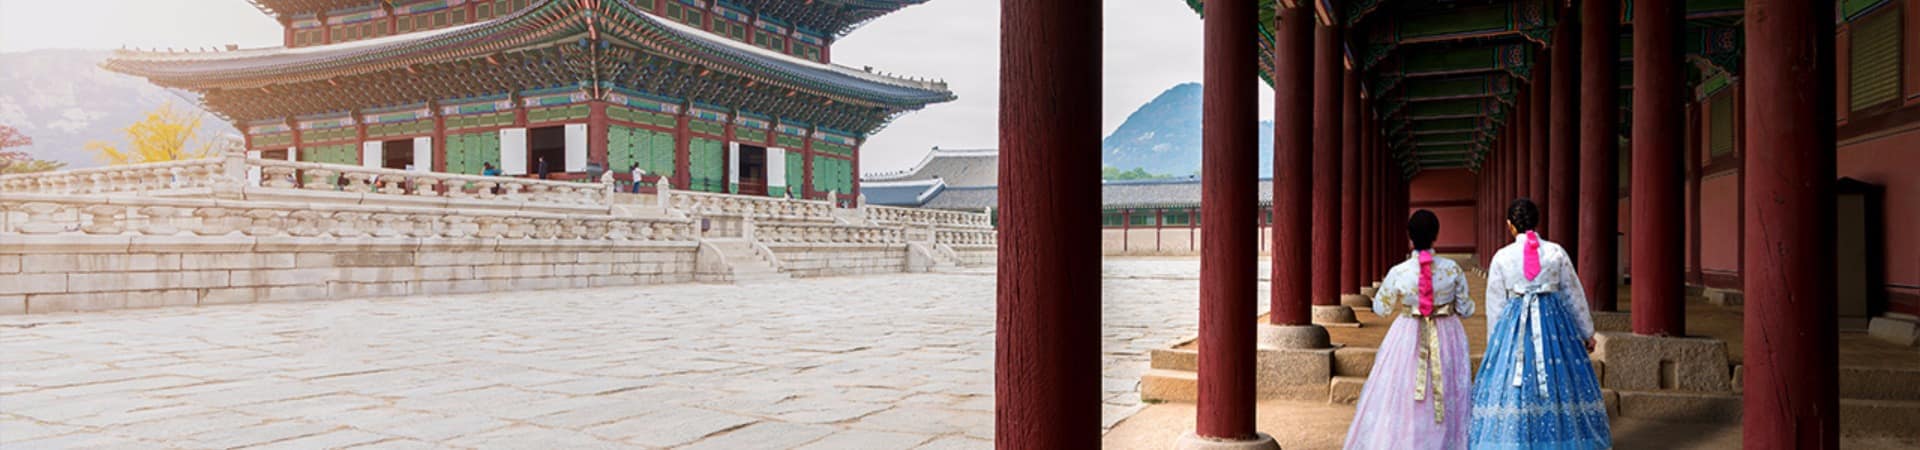 Coreiadosul seoul palacio gyeongbokgung hanbok